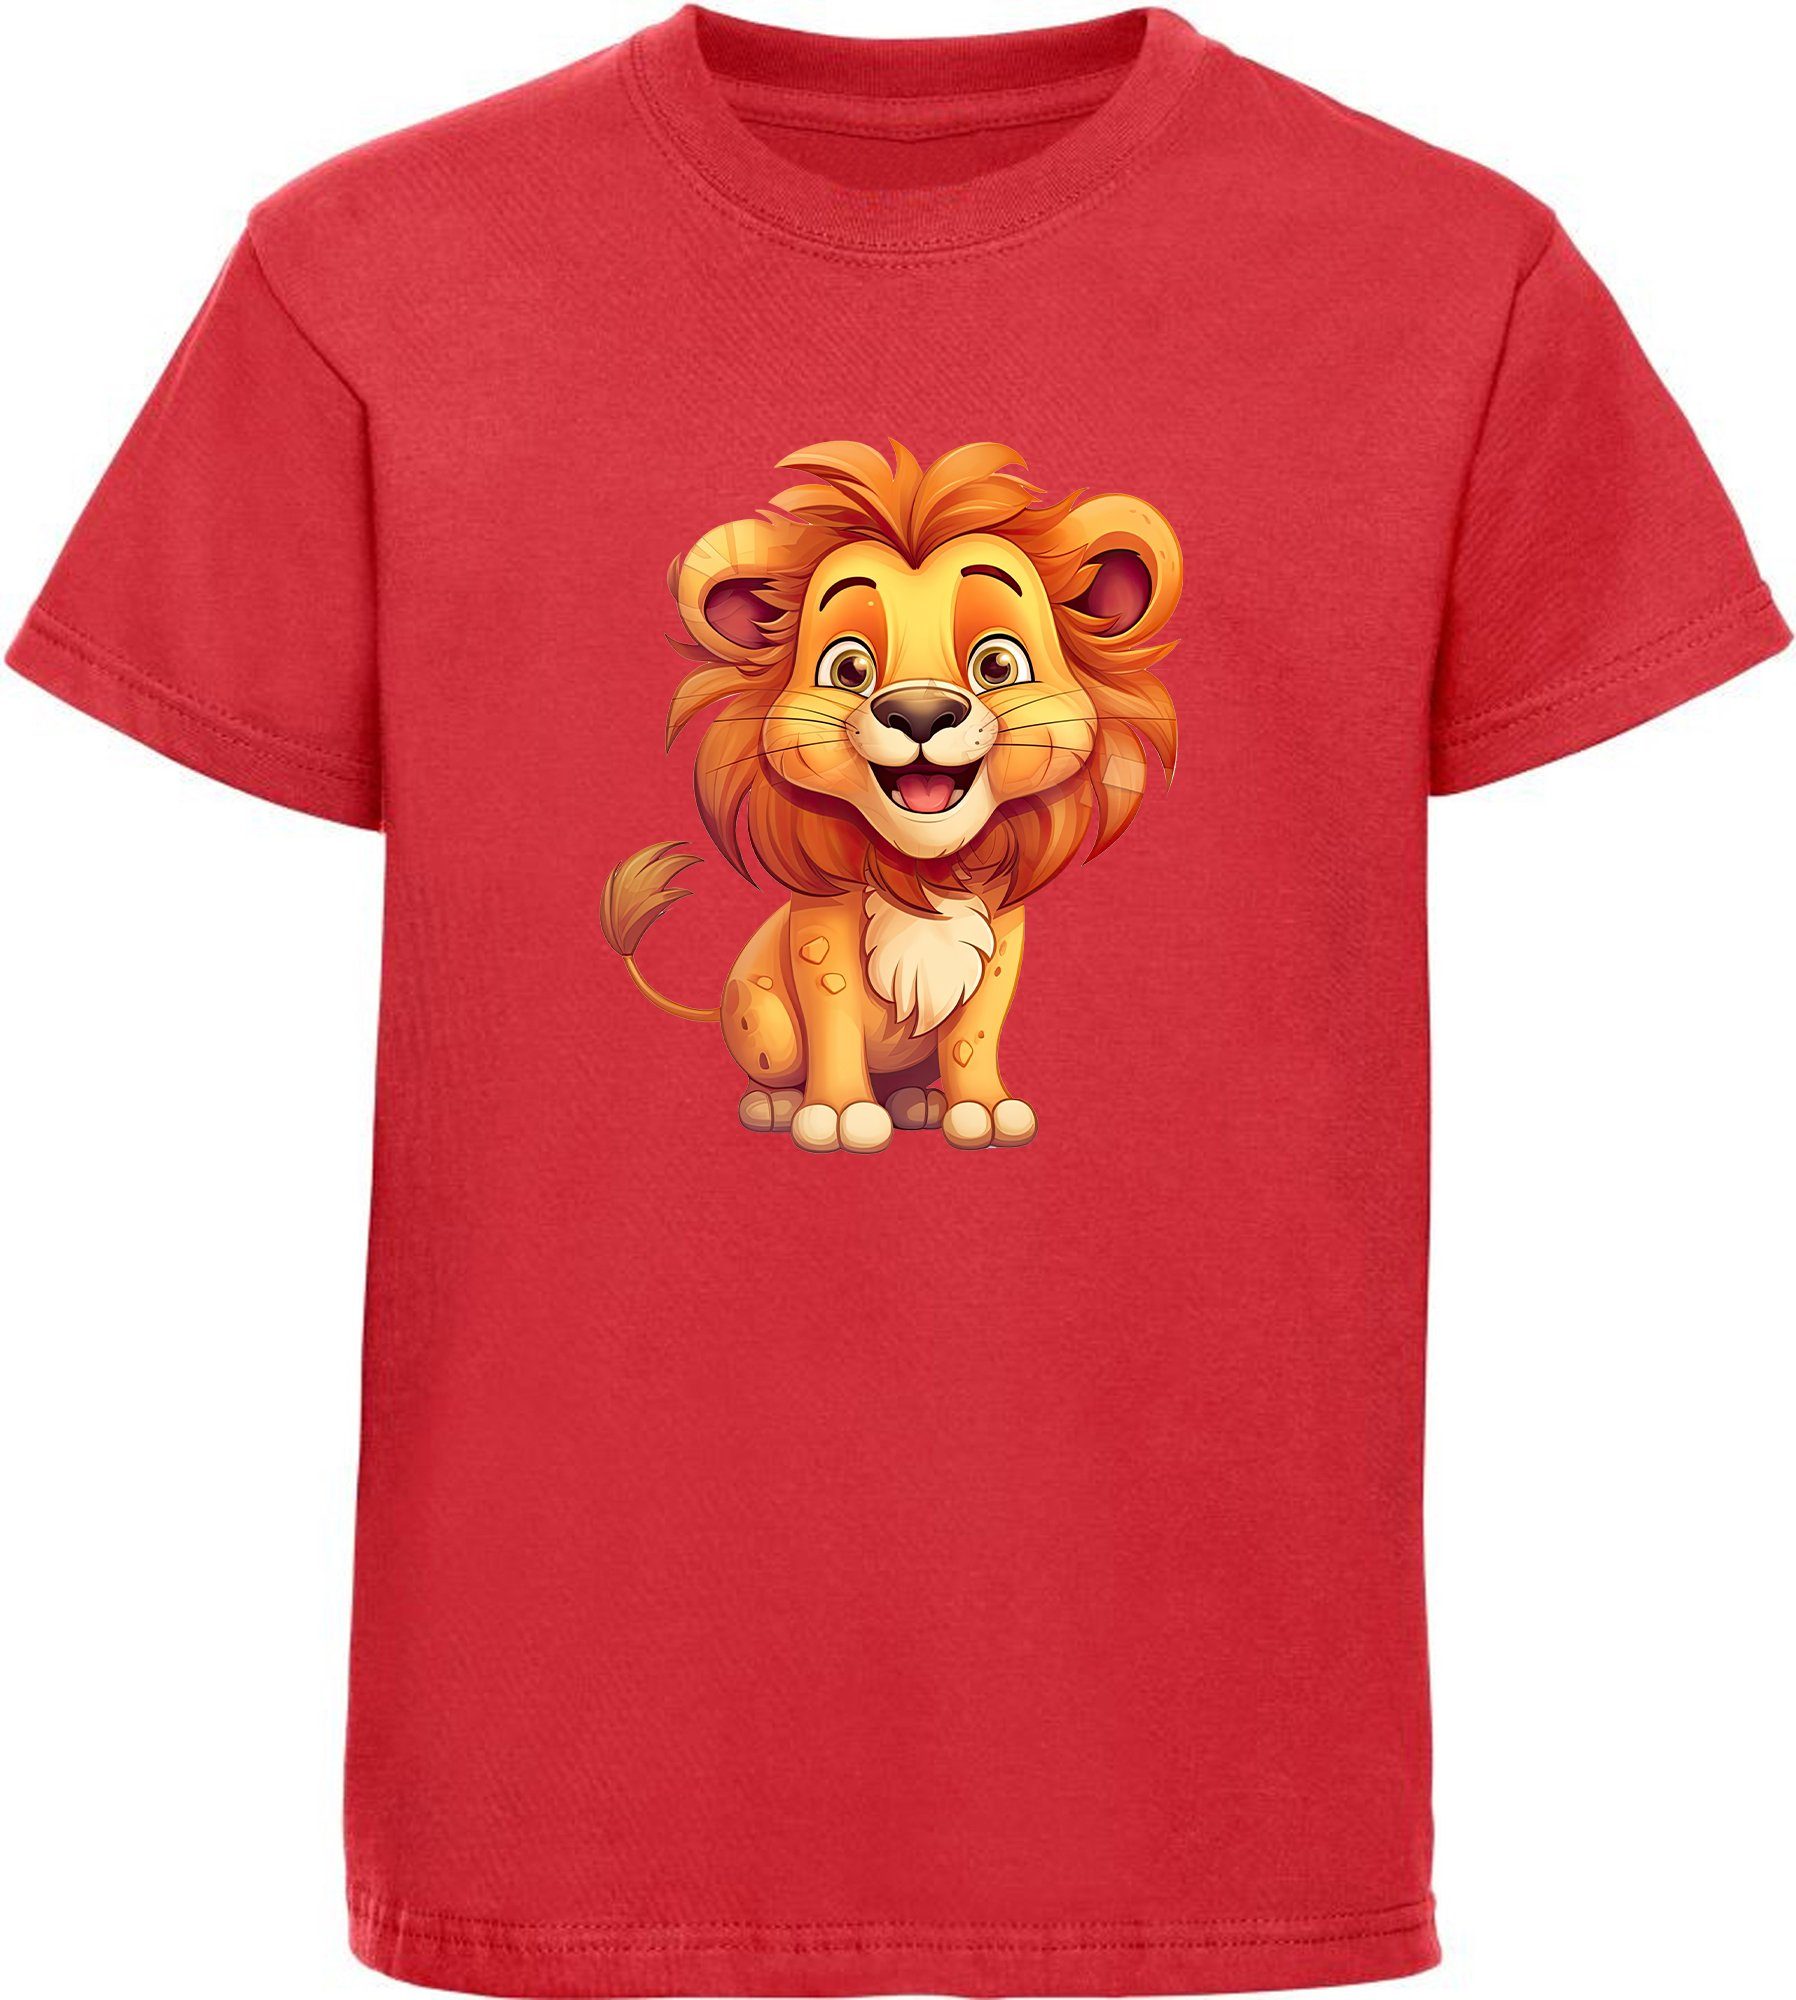 MyDesign24 T-Shirt i275 Baumwollshirt Shirt rot Print - Löwe mit Wildtier Baby bedruckt Aufdruck, Kinder